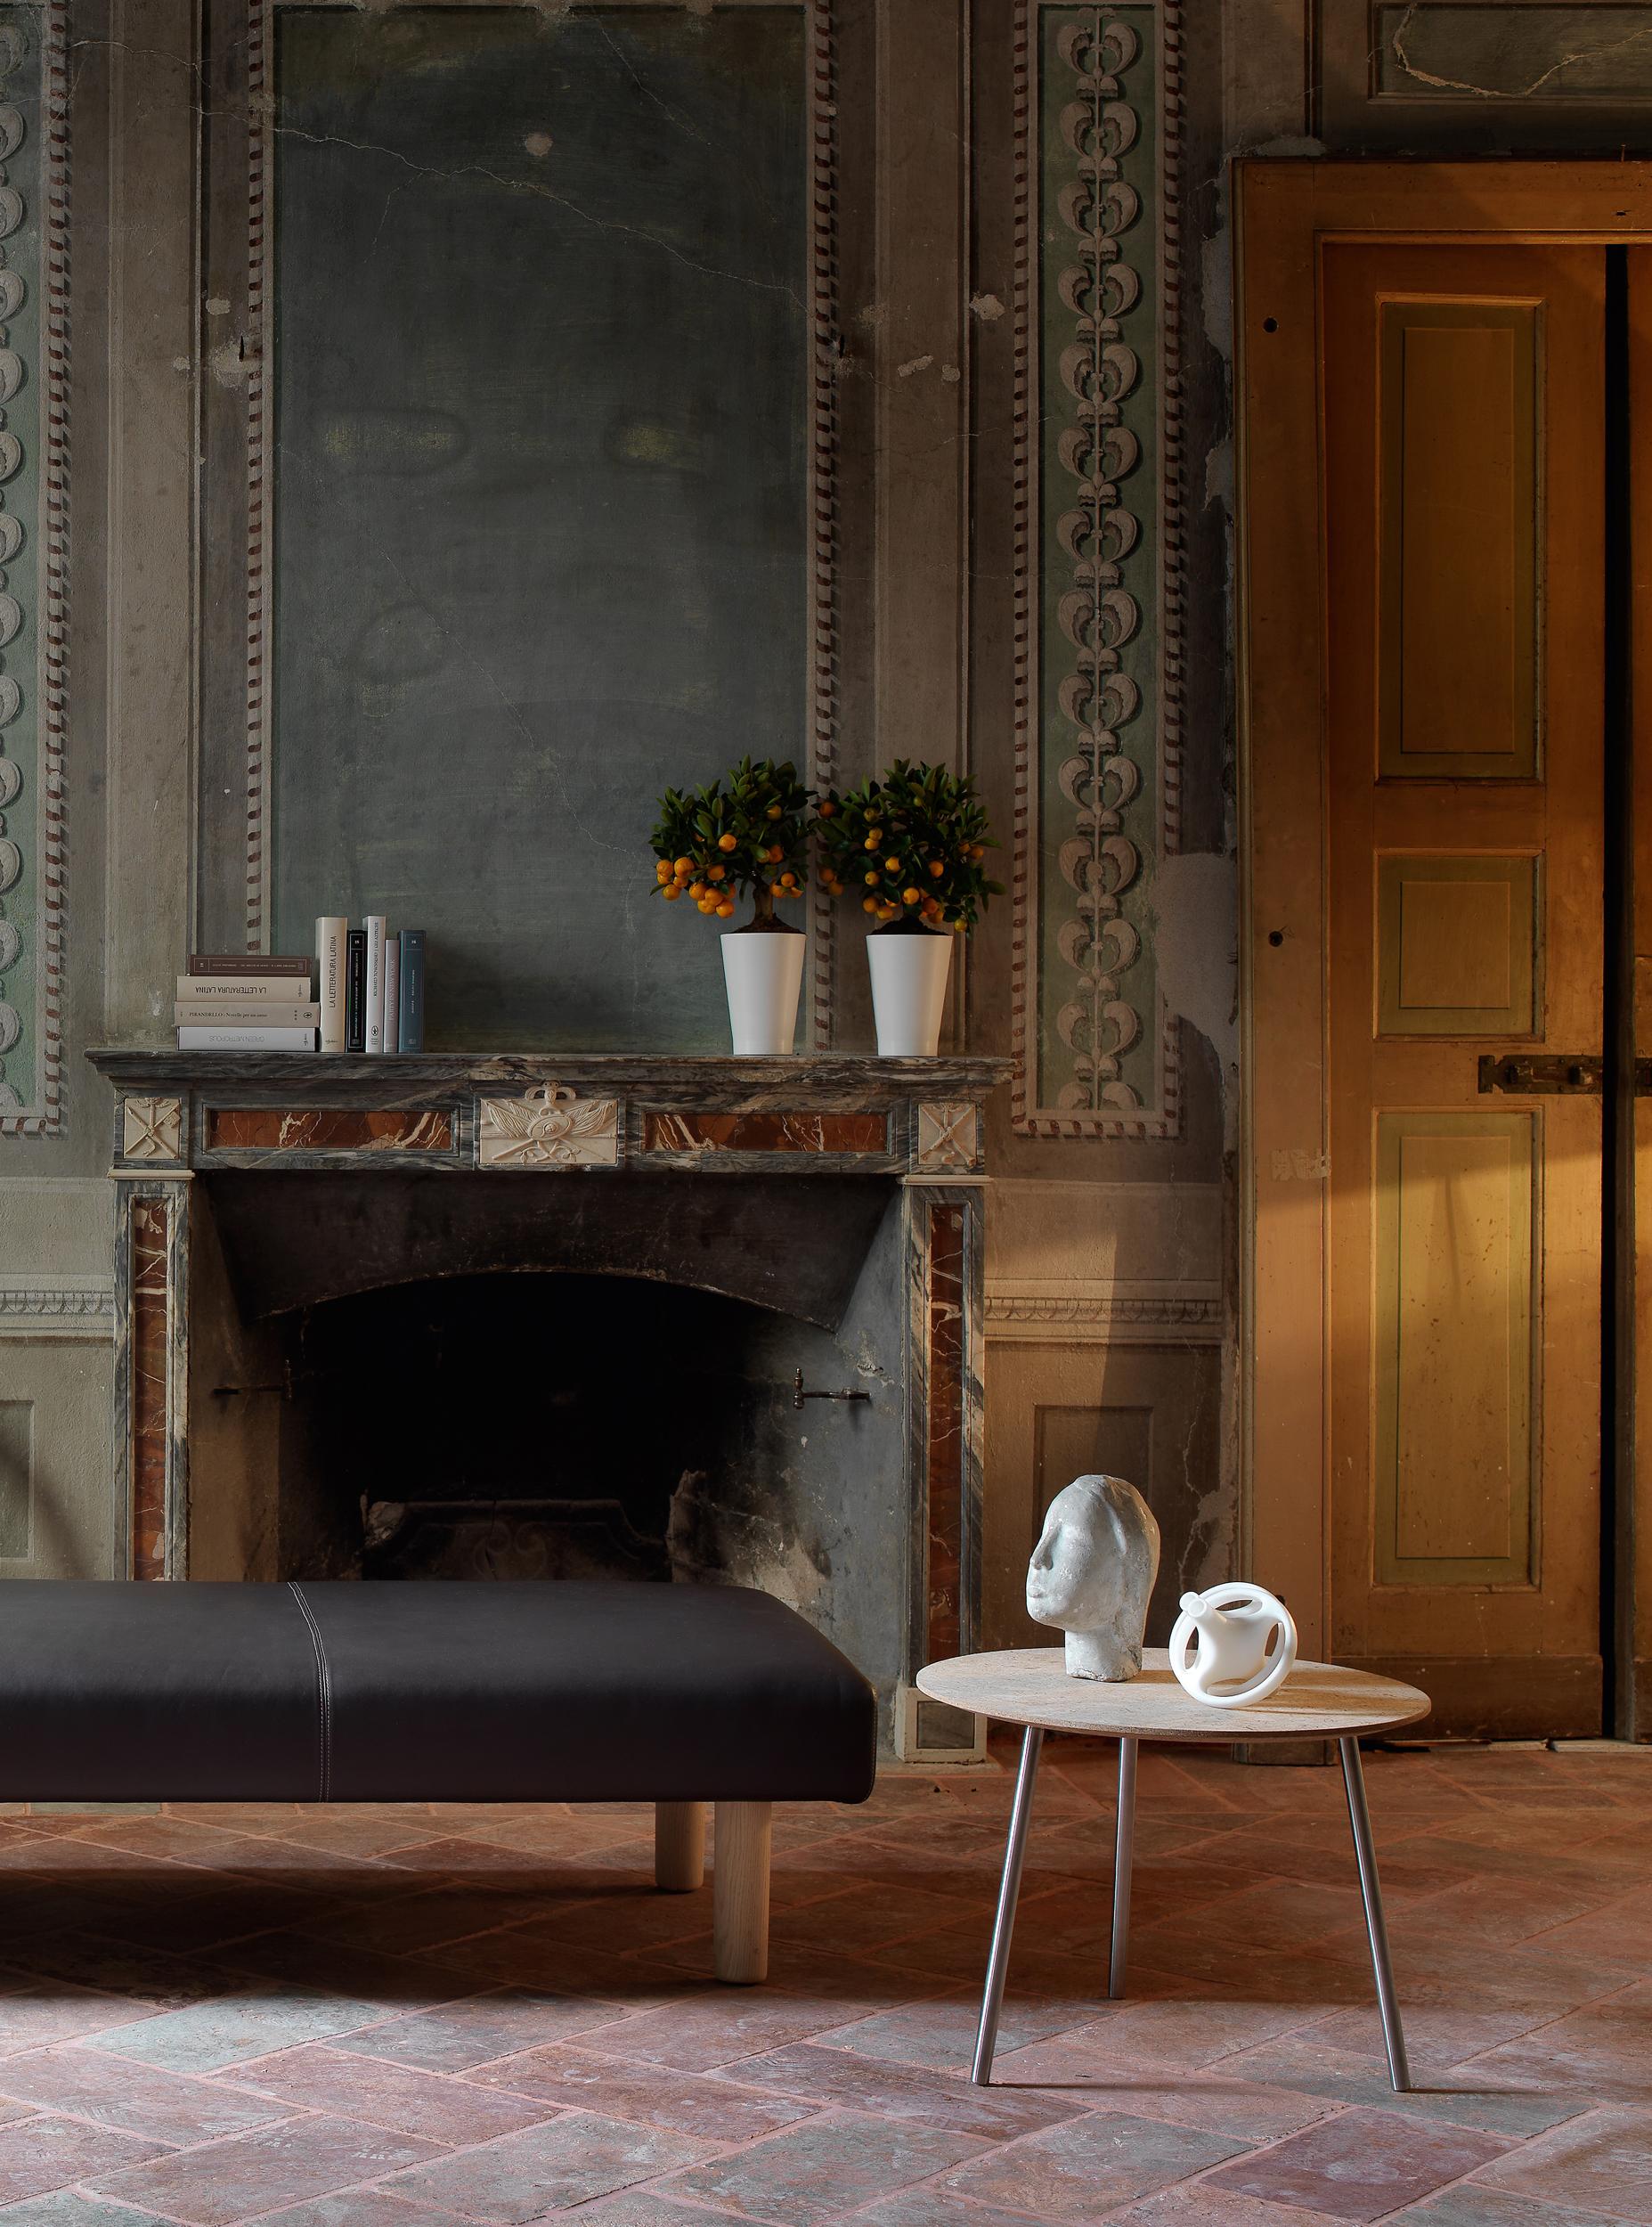 Evocateur d'atmosphères futuristes, juxtaposition parfaite à un mobilier classique, le vase Monofiore de Ronan Bouroullec est réalisé en polycarbonate blanc.

Matériau : Polycarbonate
Finition disponible : Blanc mat.